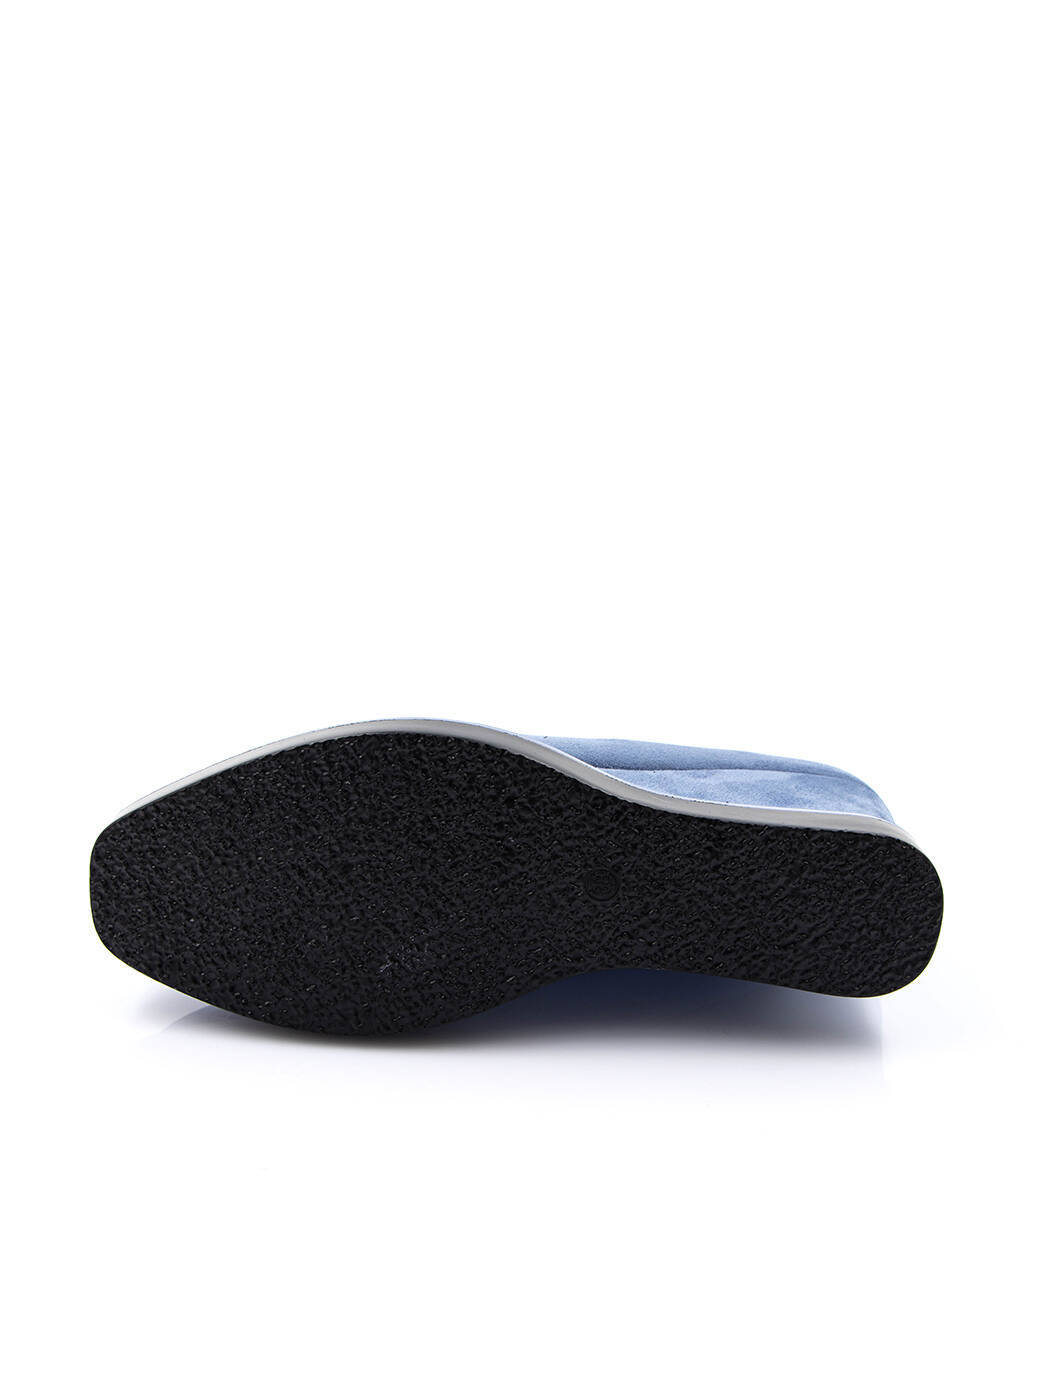 Туфли женские голубые экозамша каблук устойчивый демисезон от производителя 5M вид 2